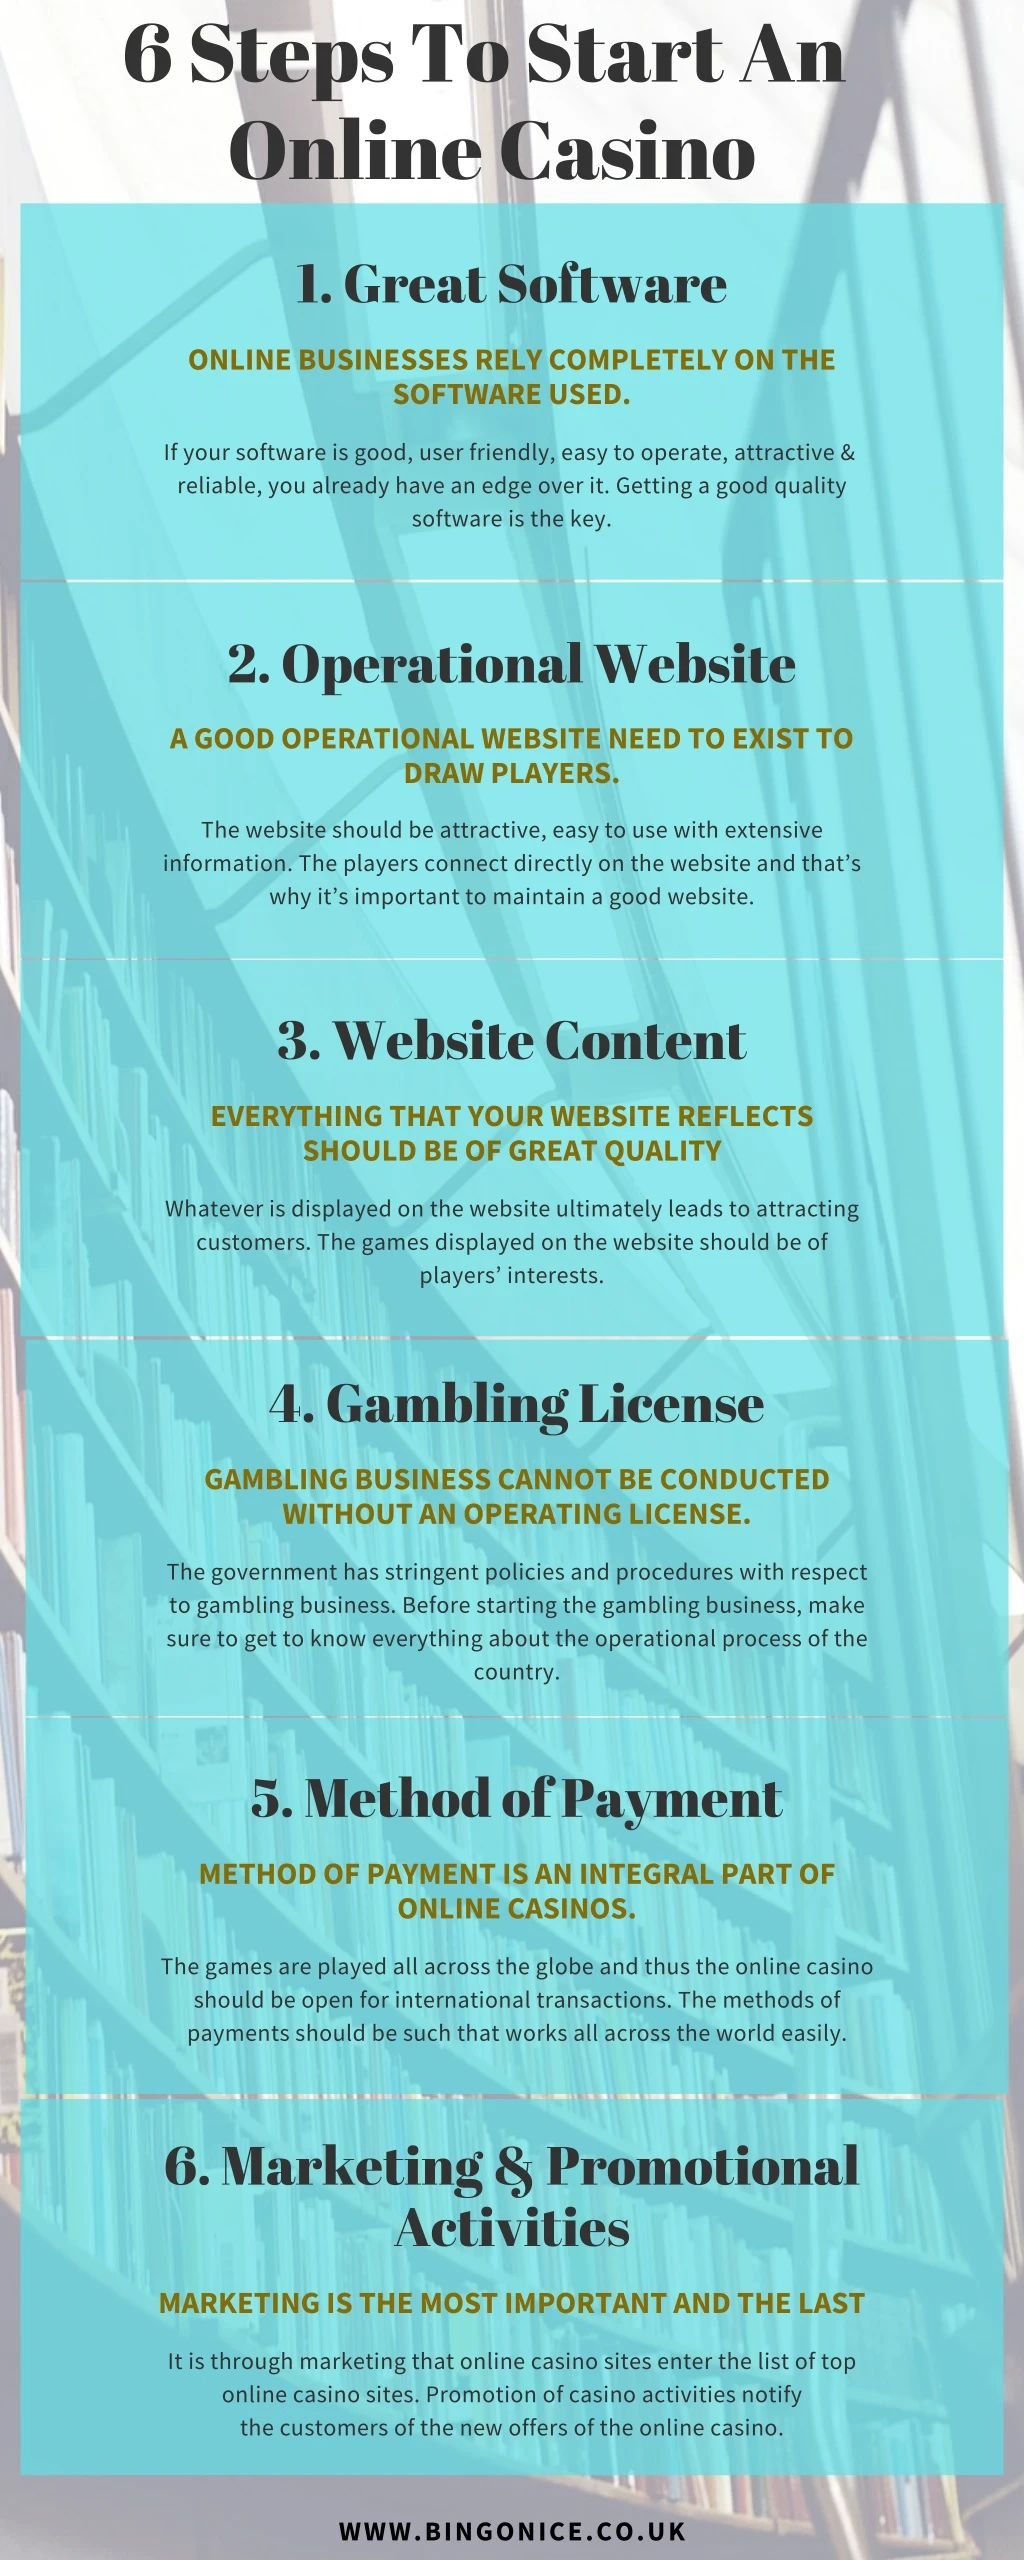 6 steps to start an online casino